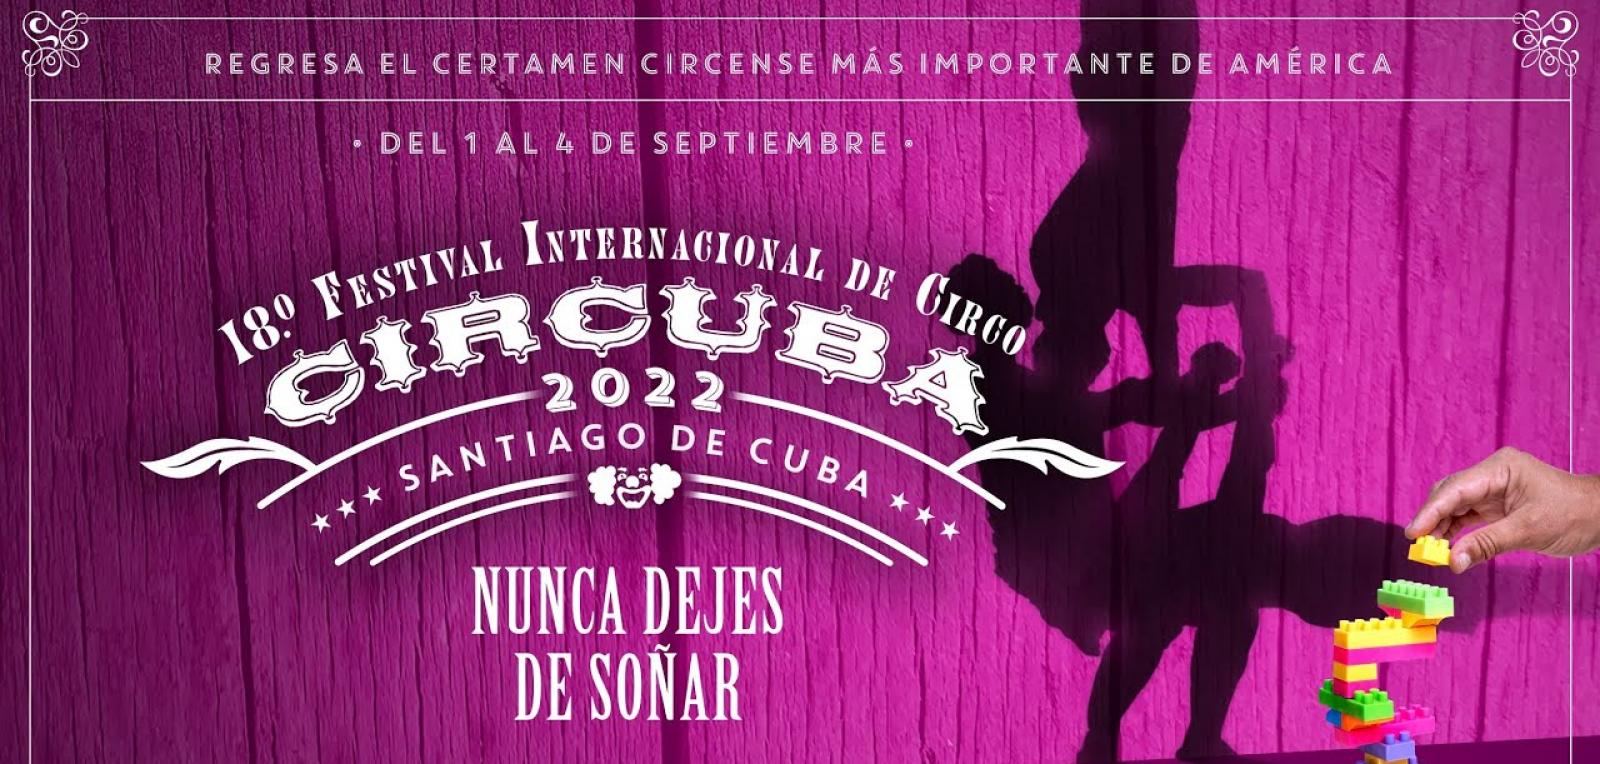 Comenzó en Santiago de Cuba festival internacional de circo